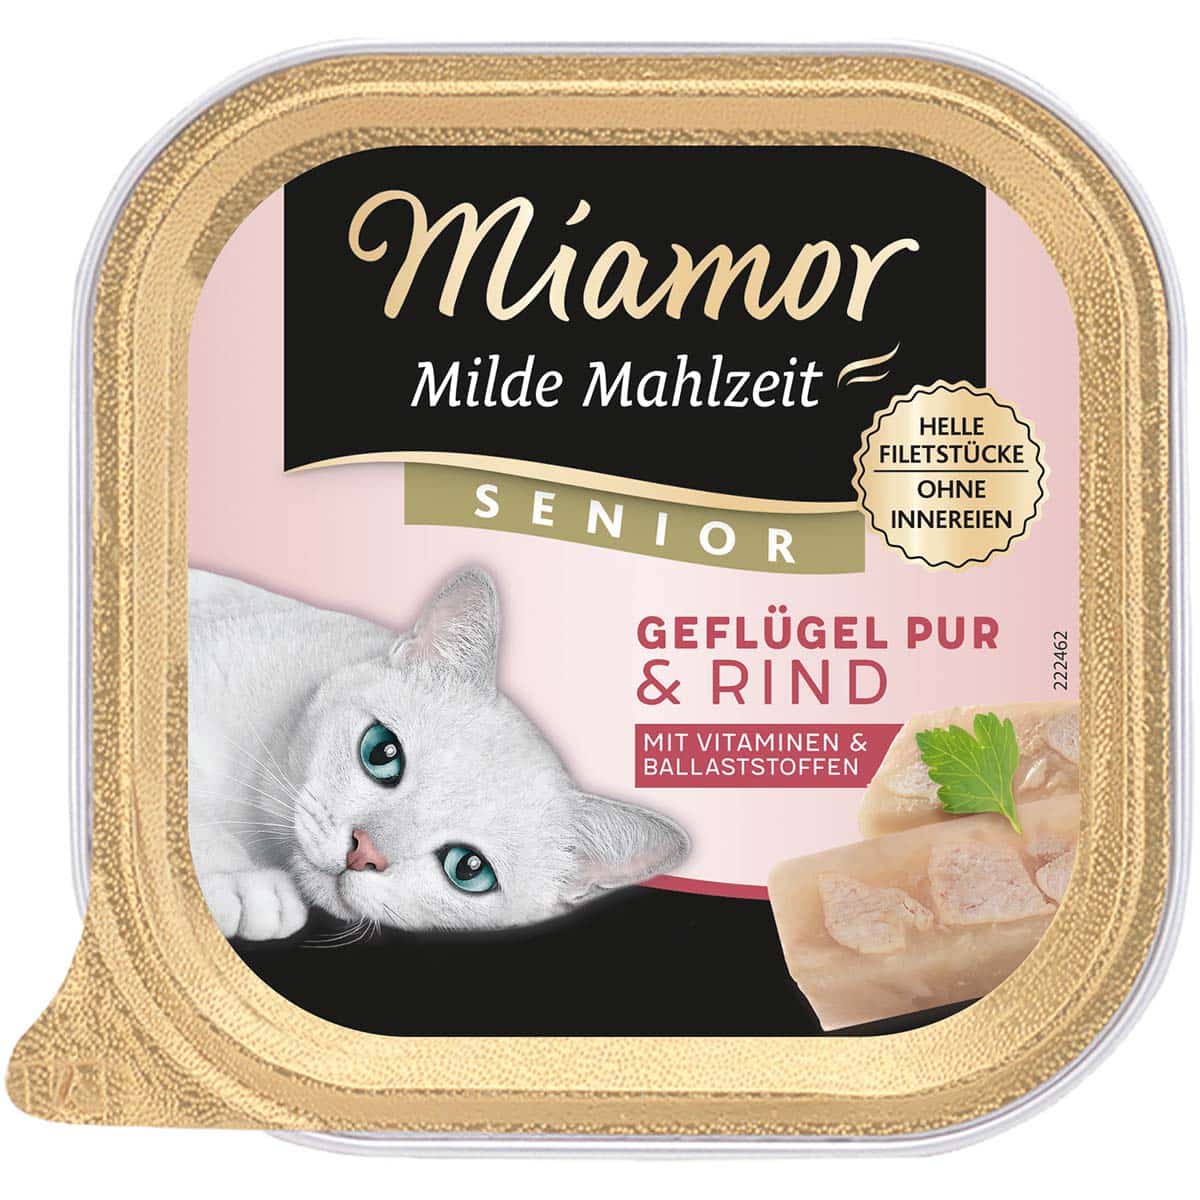 Miamor Milde Mahlzeit Senior Geflügel Pur & Rind 32x100g